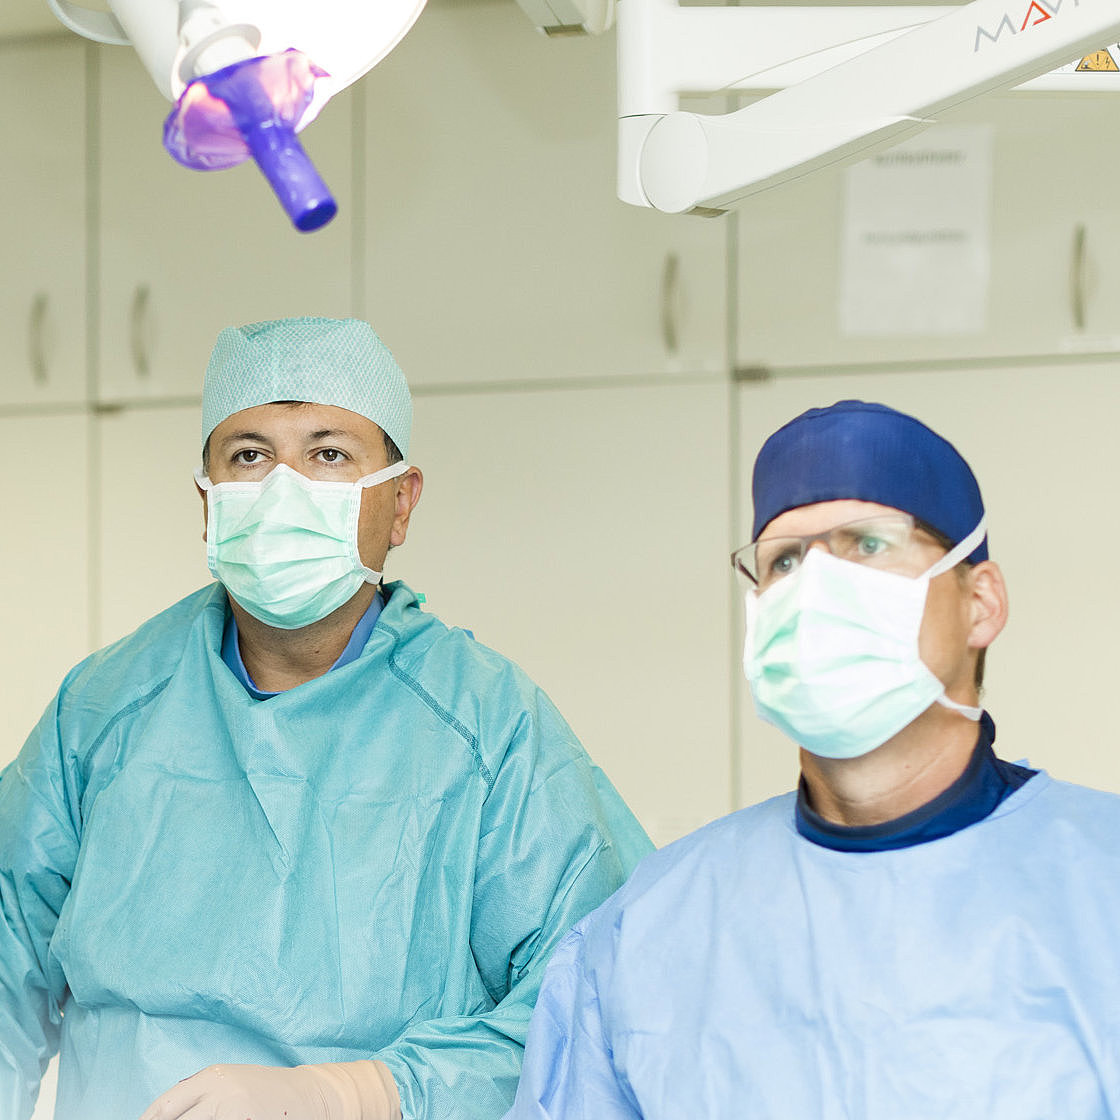 Zwei Ärzte operieren einen Patienten